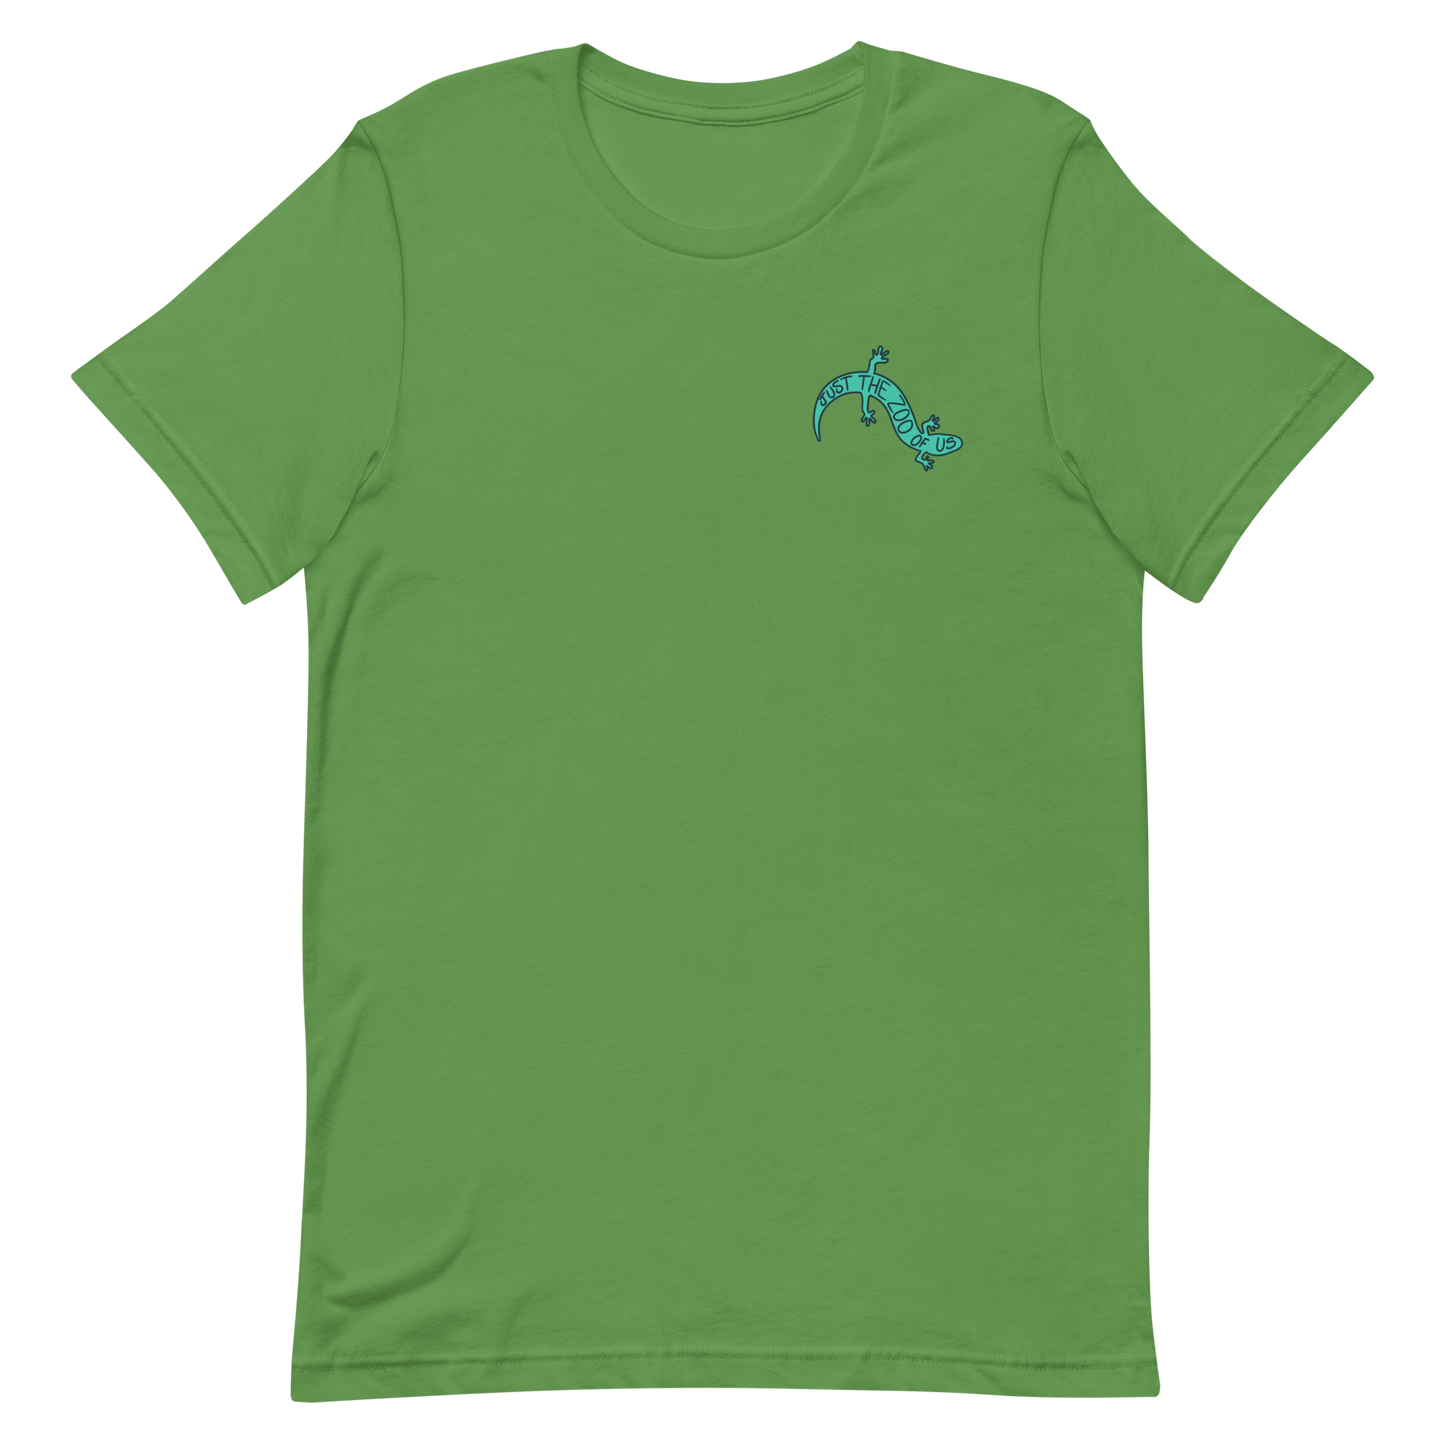 Lizard T-shirt